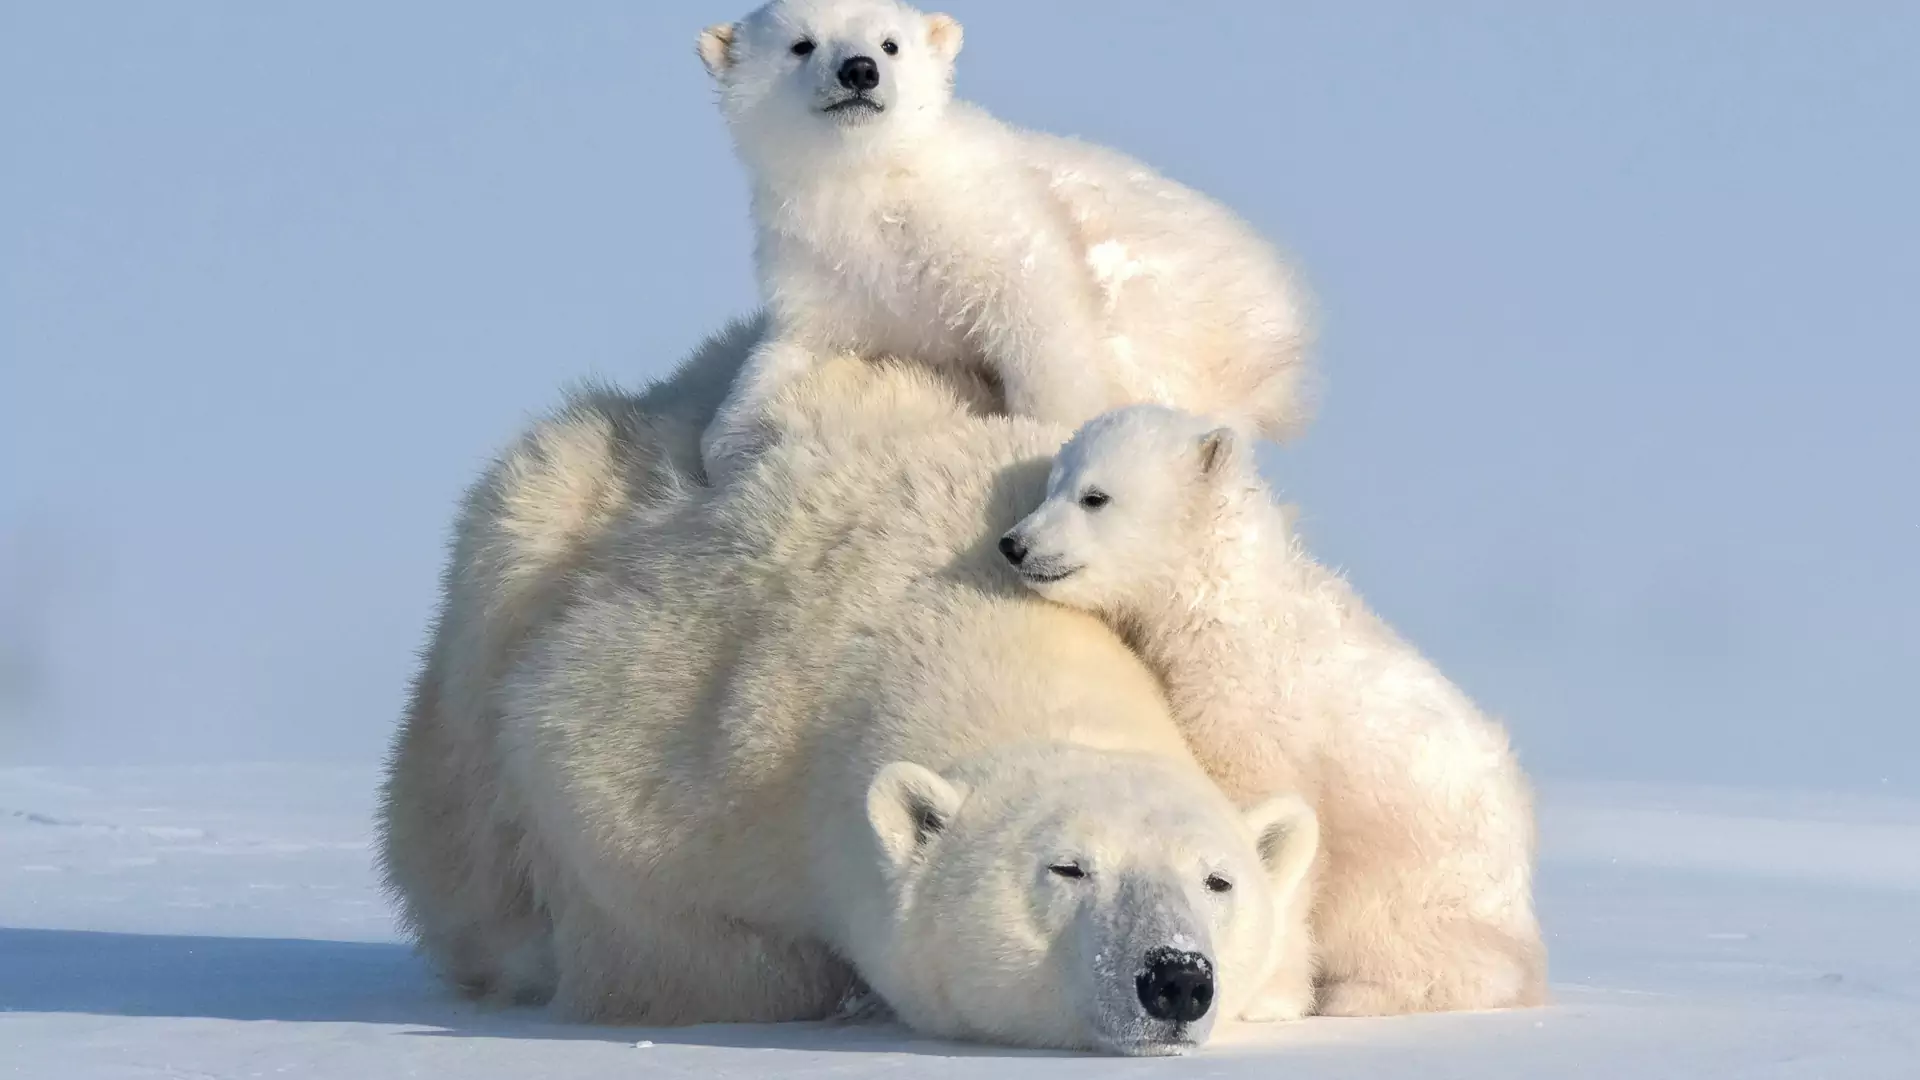 Do 2100 zniknie prawie cała populacja niedźwiedzi polarnych, twierdzą naukowcy